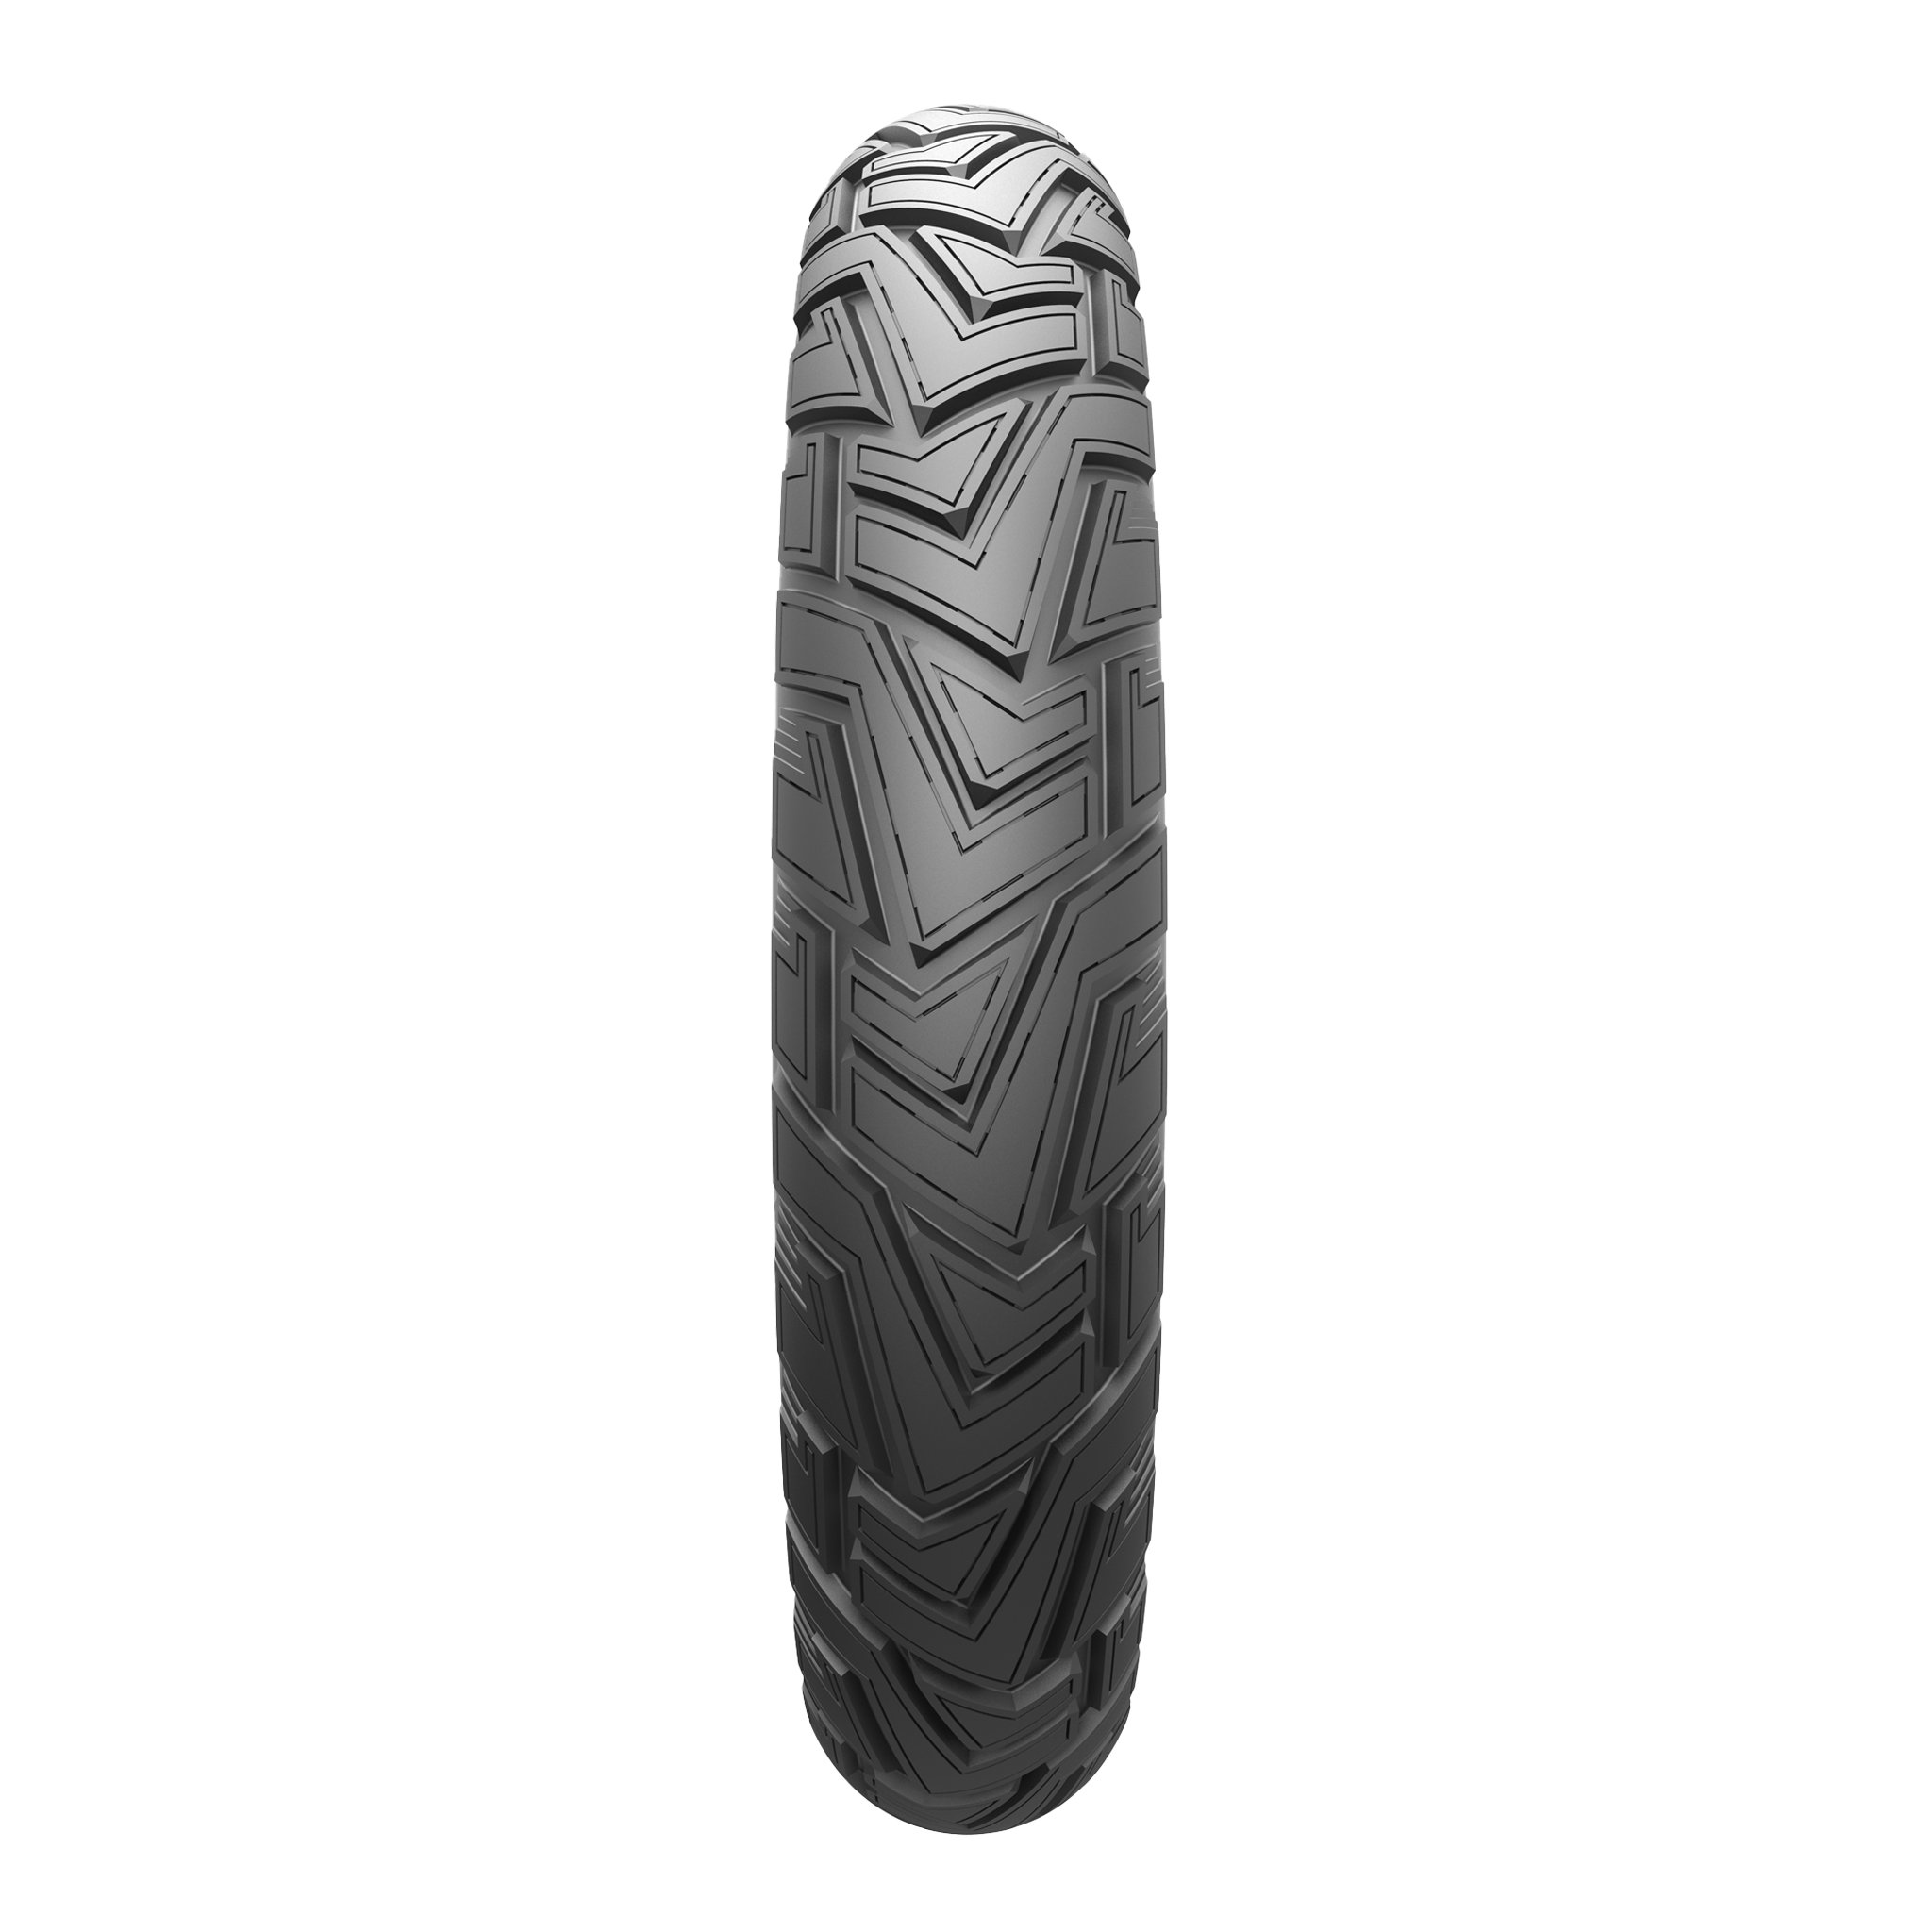 Tire Cradles Maximum width 9.84″ EASYRISE – V